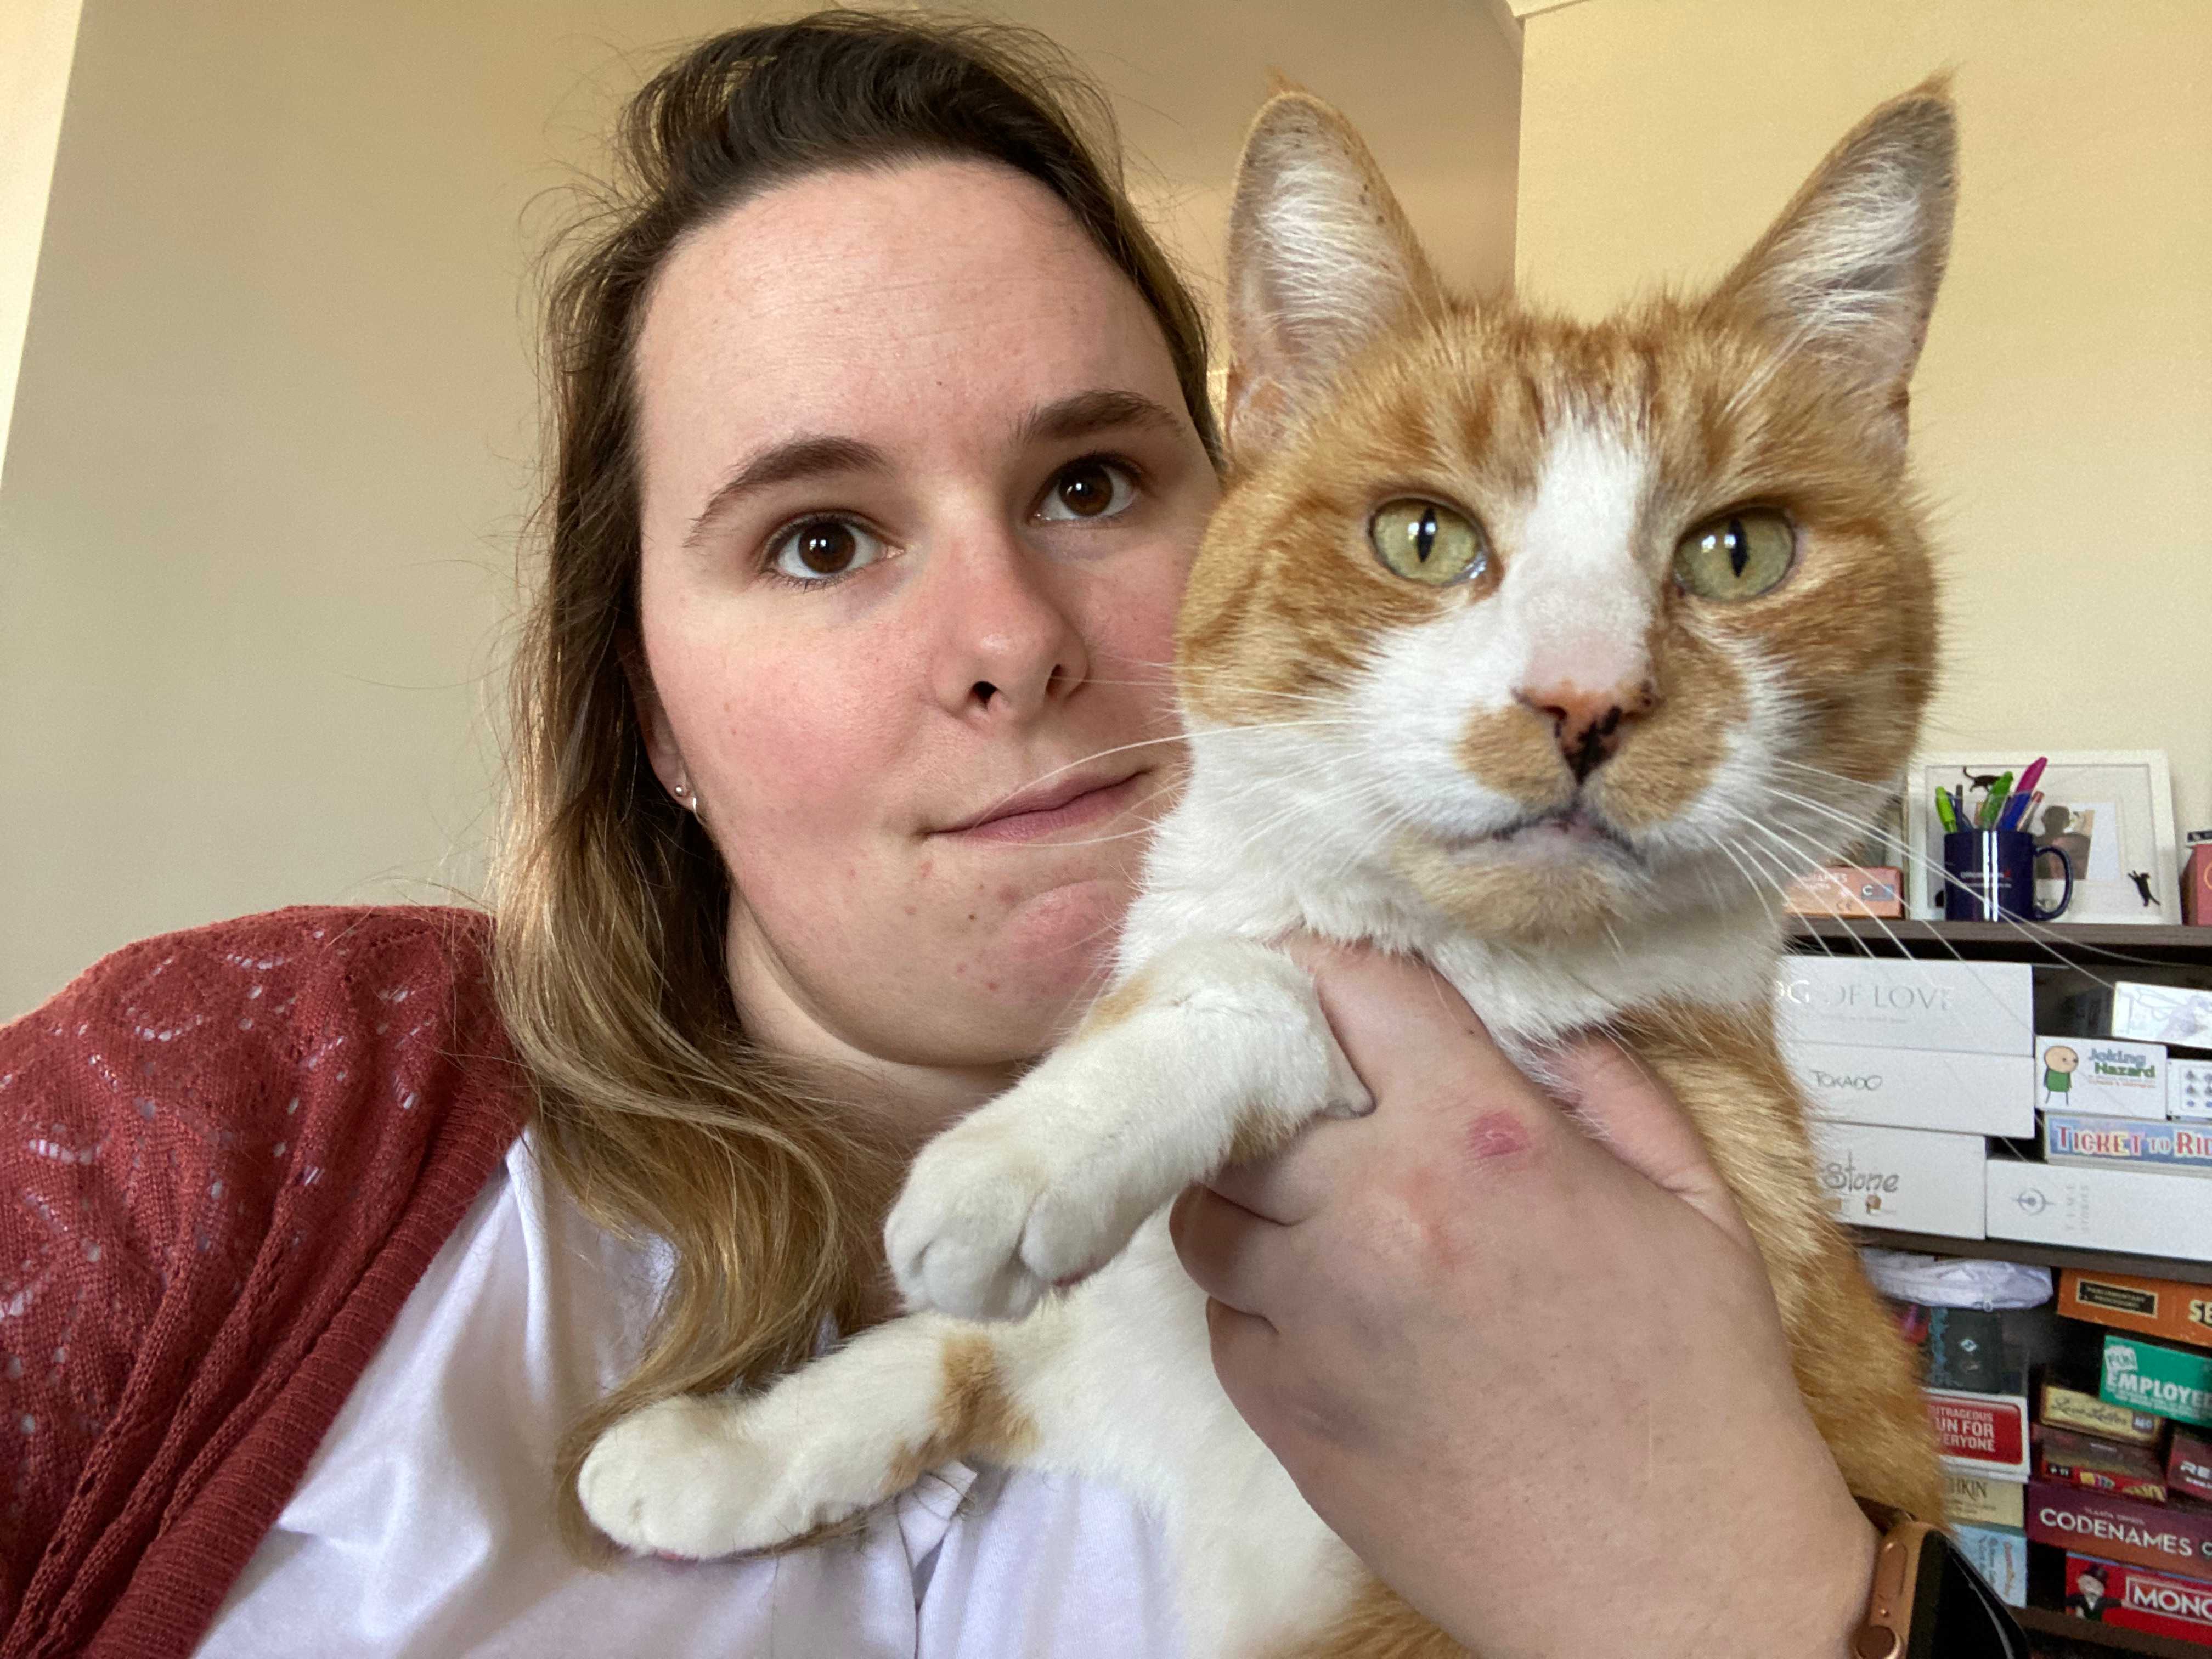 Shelley Bassett and her ginger cat Chester